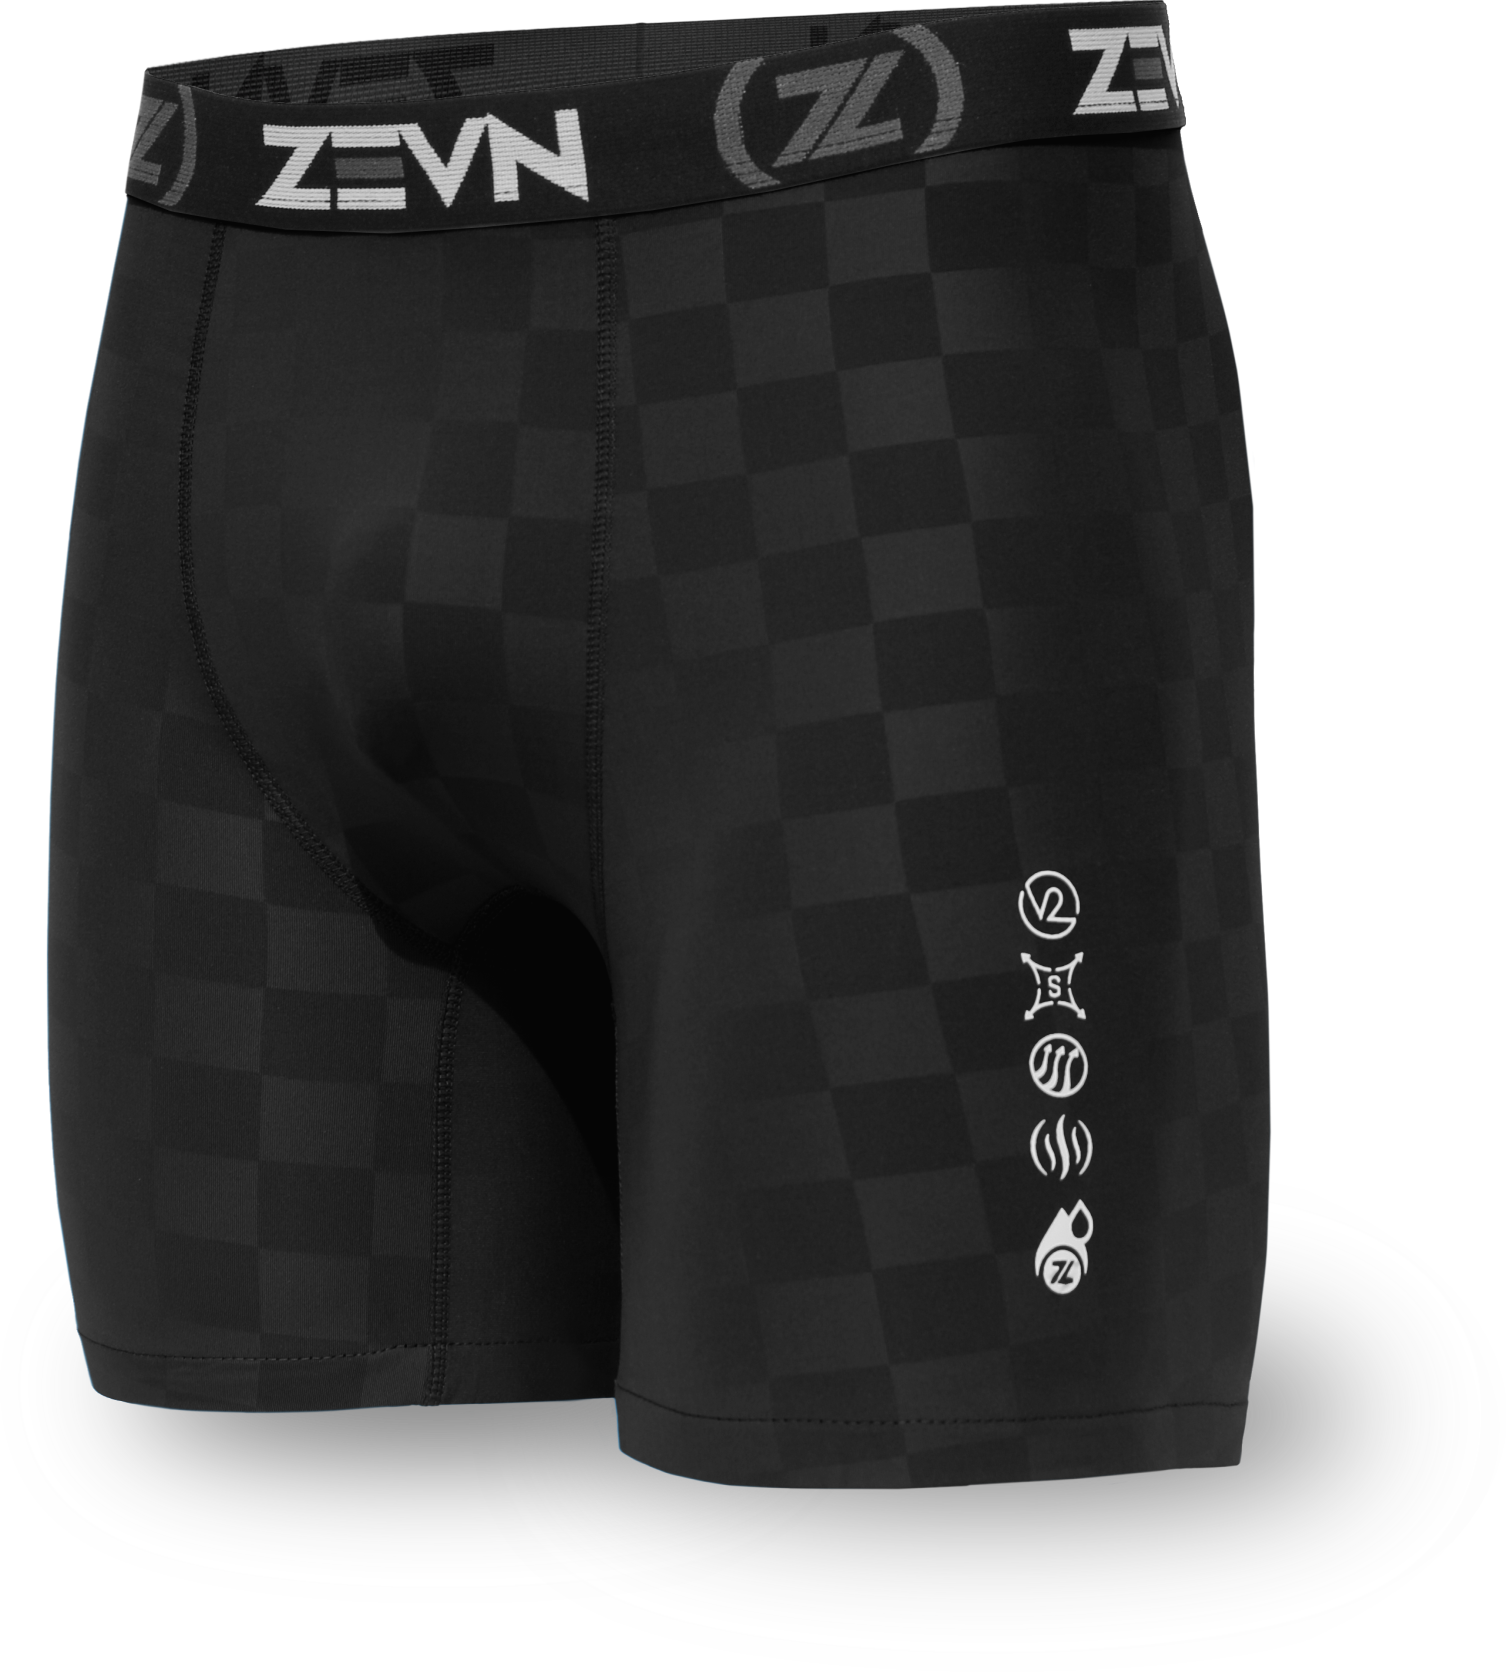 Men in wet & dry sports underwear: ZEVN ZVM Men's high performance briefs –  ZEVN USA Sports Underwear